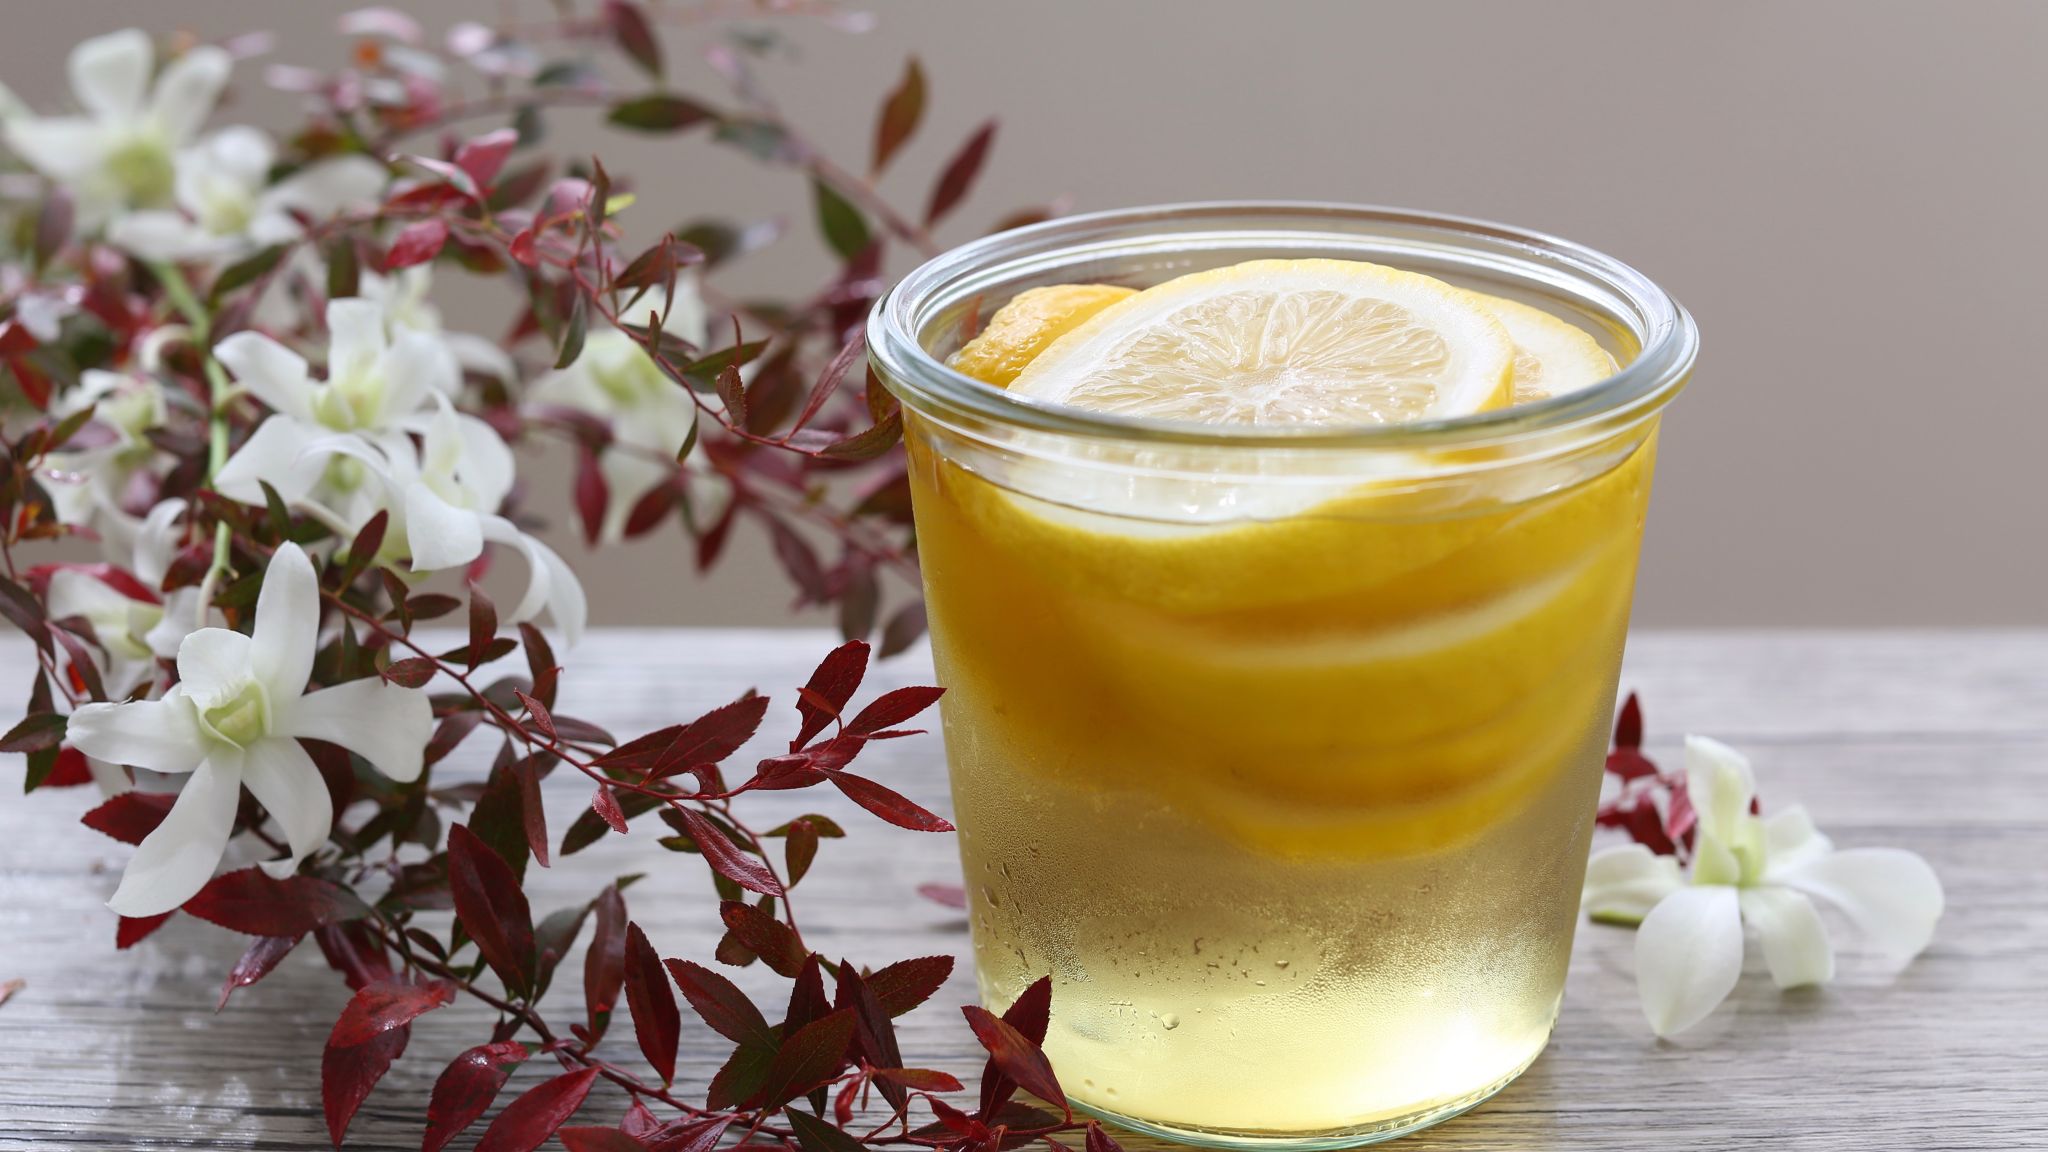 レモン酢の作り方2パターン 効果 飲み方 料理に使う方法も紹介 やまでら くみこ のレシピ